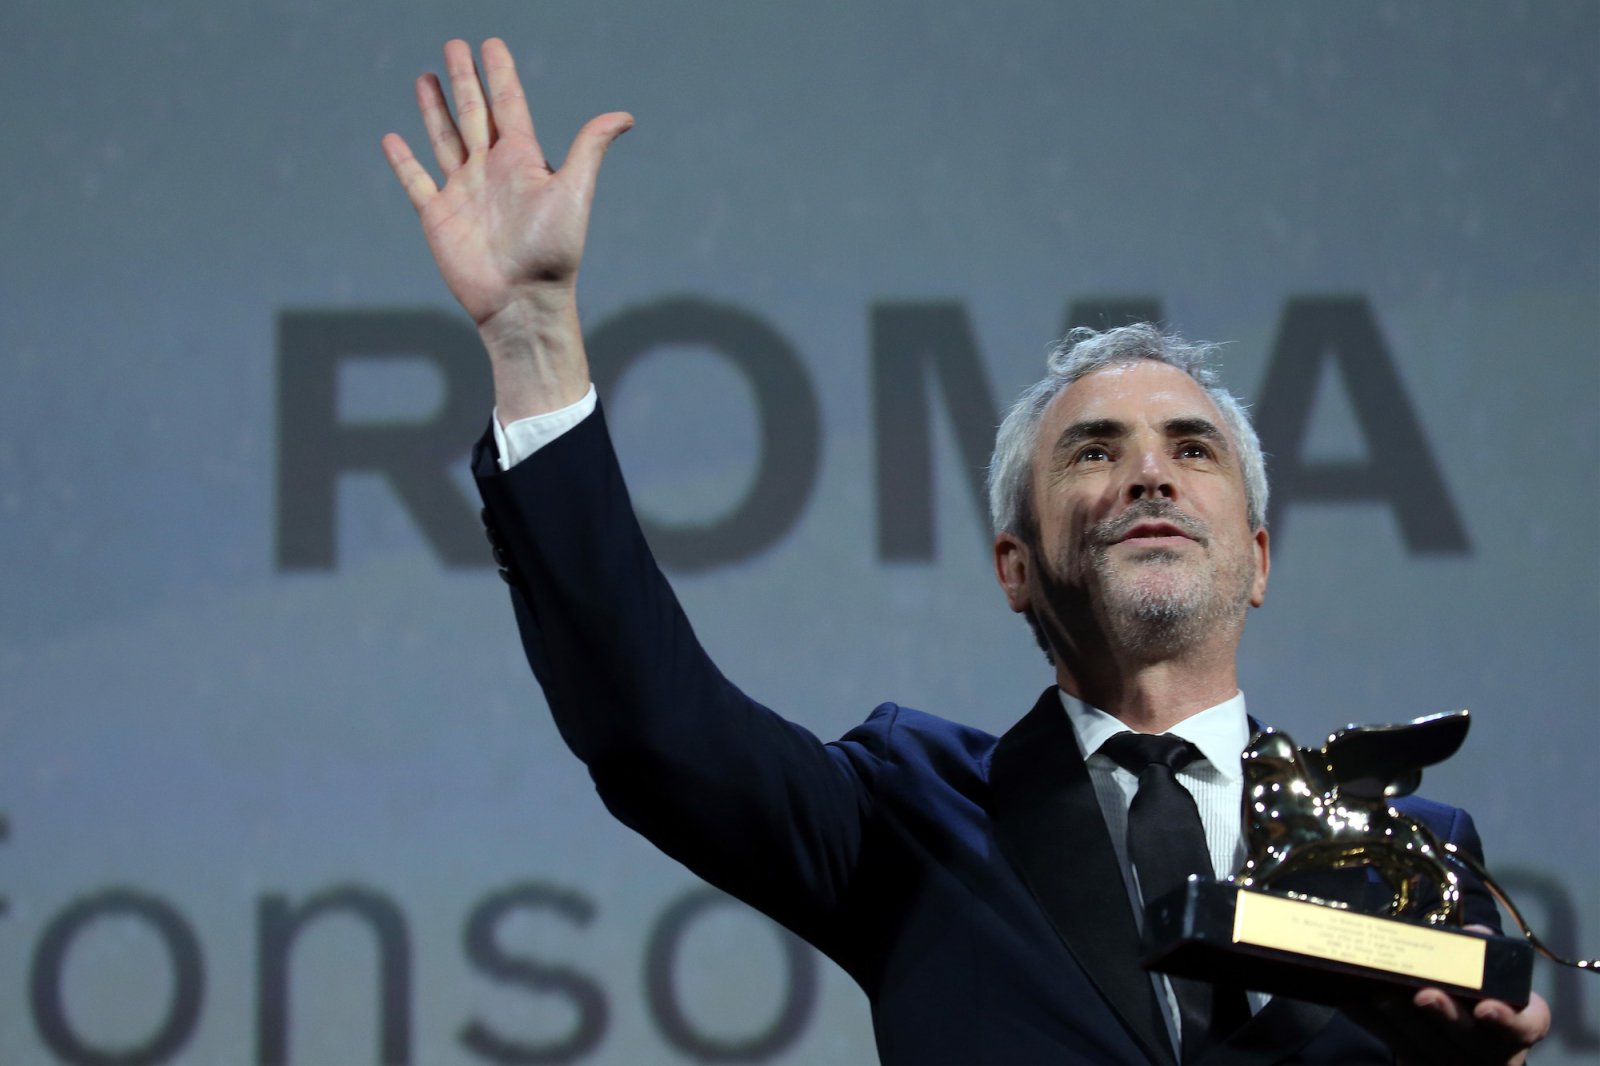 Alfonso Cuaron odbiera nagrodę / (Fot. Getty Image)